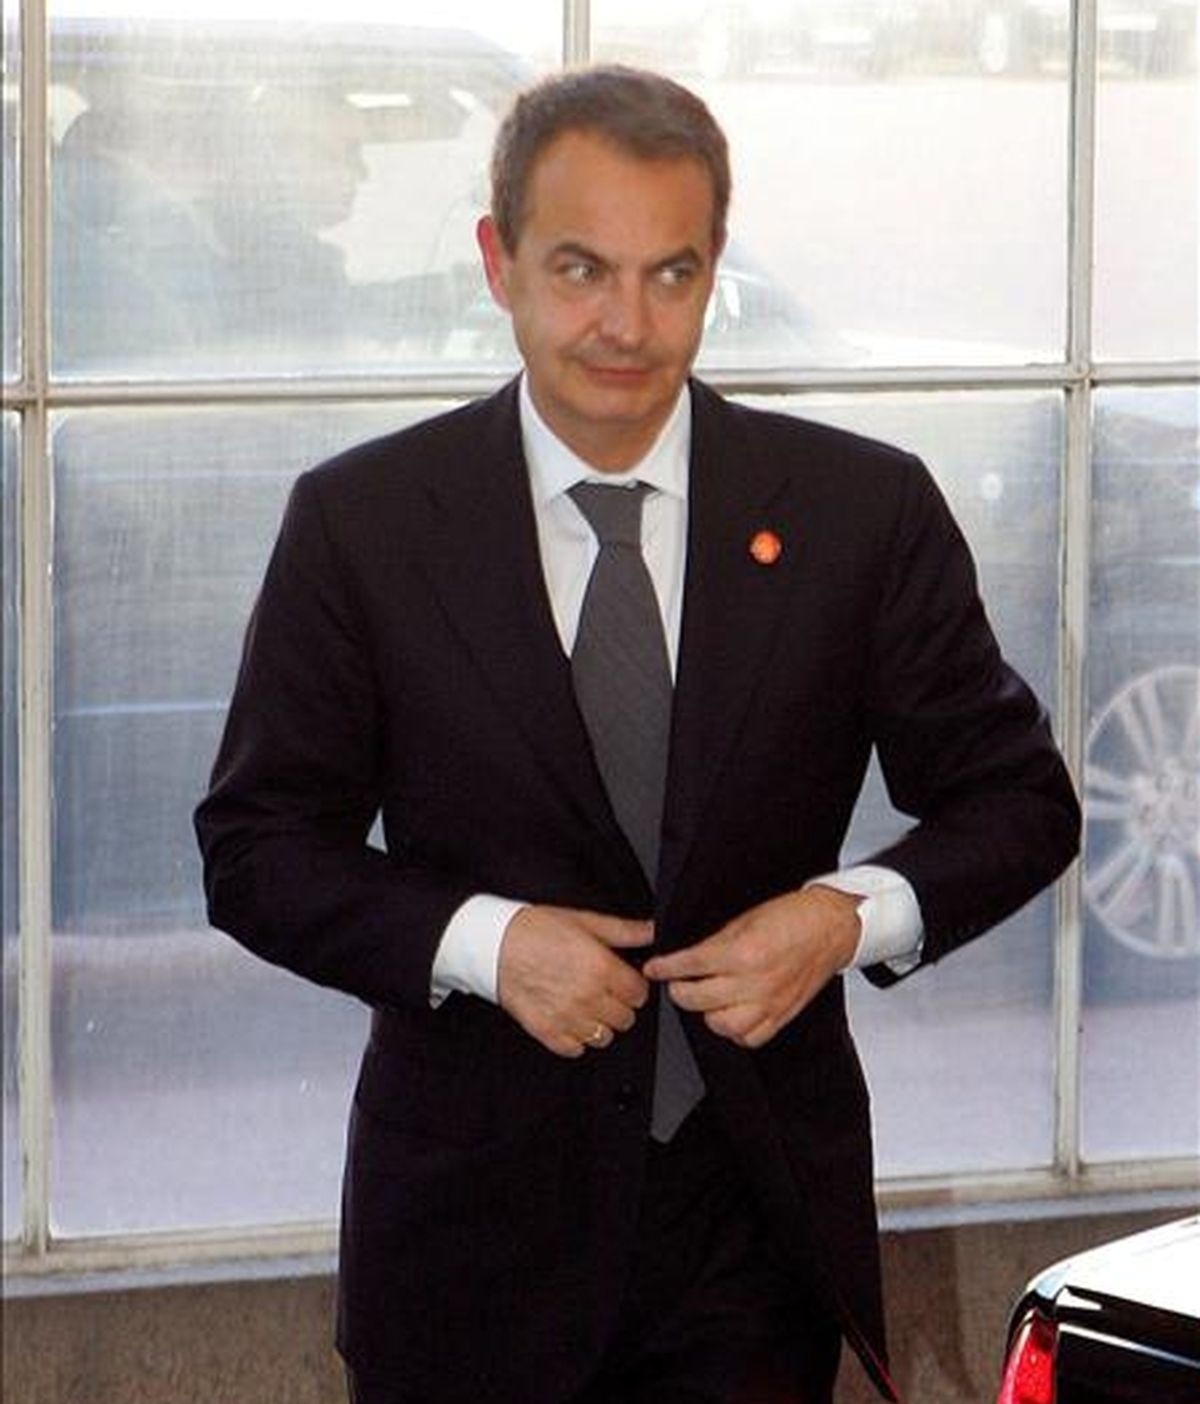 El líder del gobierno español, Jose Luis Rodriguez Zapatero, llega al Palacio de Buckingham en Londres (Reino Unido), para asistir a una recepción ofrecida por la Reina Isabel II previa a la Cumbre del G-20. EFE